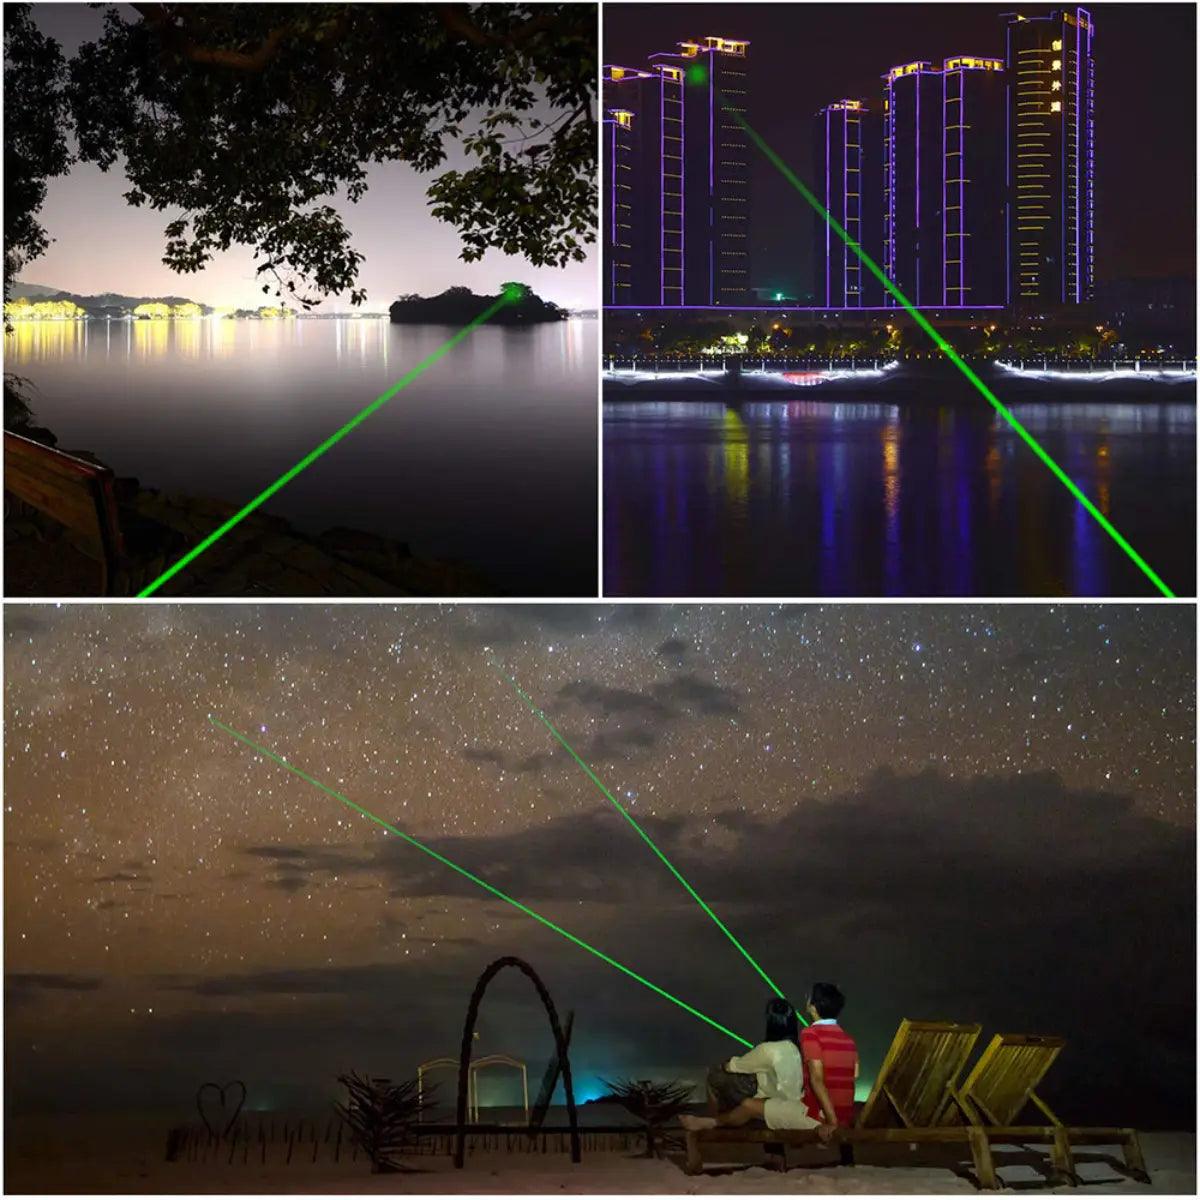 Pointeur Stylo Laser Rechargeable, Couleur: Vert Green - Lasers, pointeurs  et lampes tactiques (10251213)